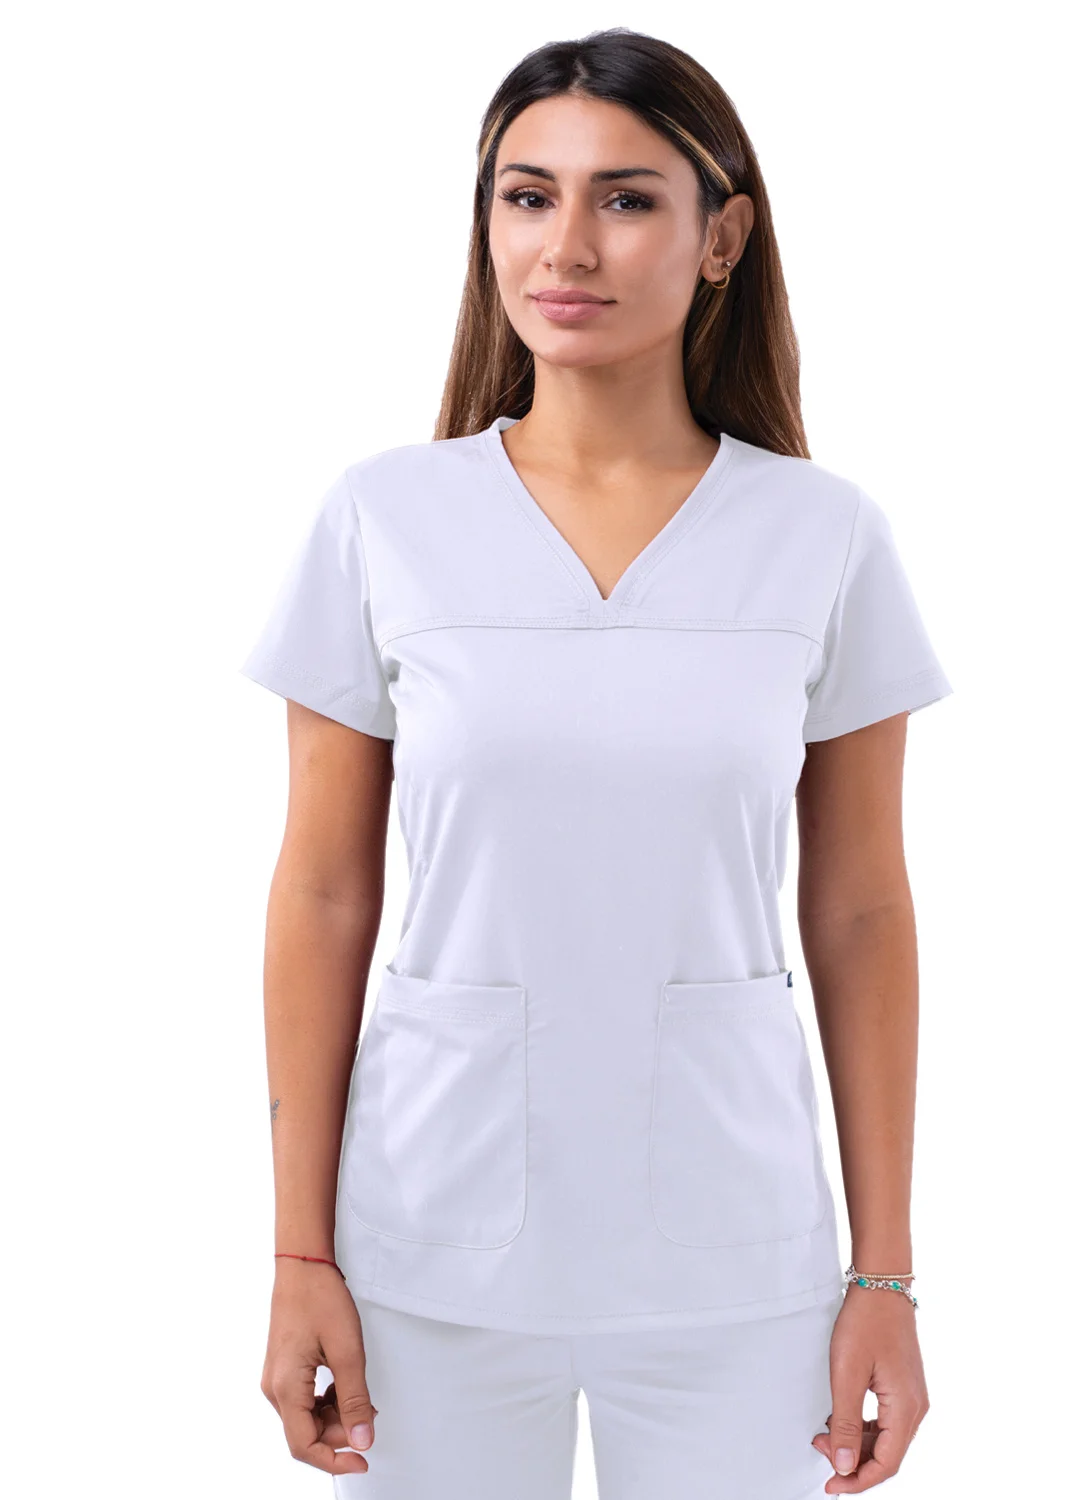 Source Factory Price Stretch V-neck Uniformes Medicos Hospital Nursing Scrubs Doctor Womens on m.alibaba.com